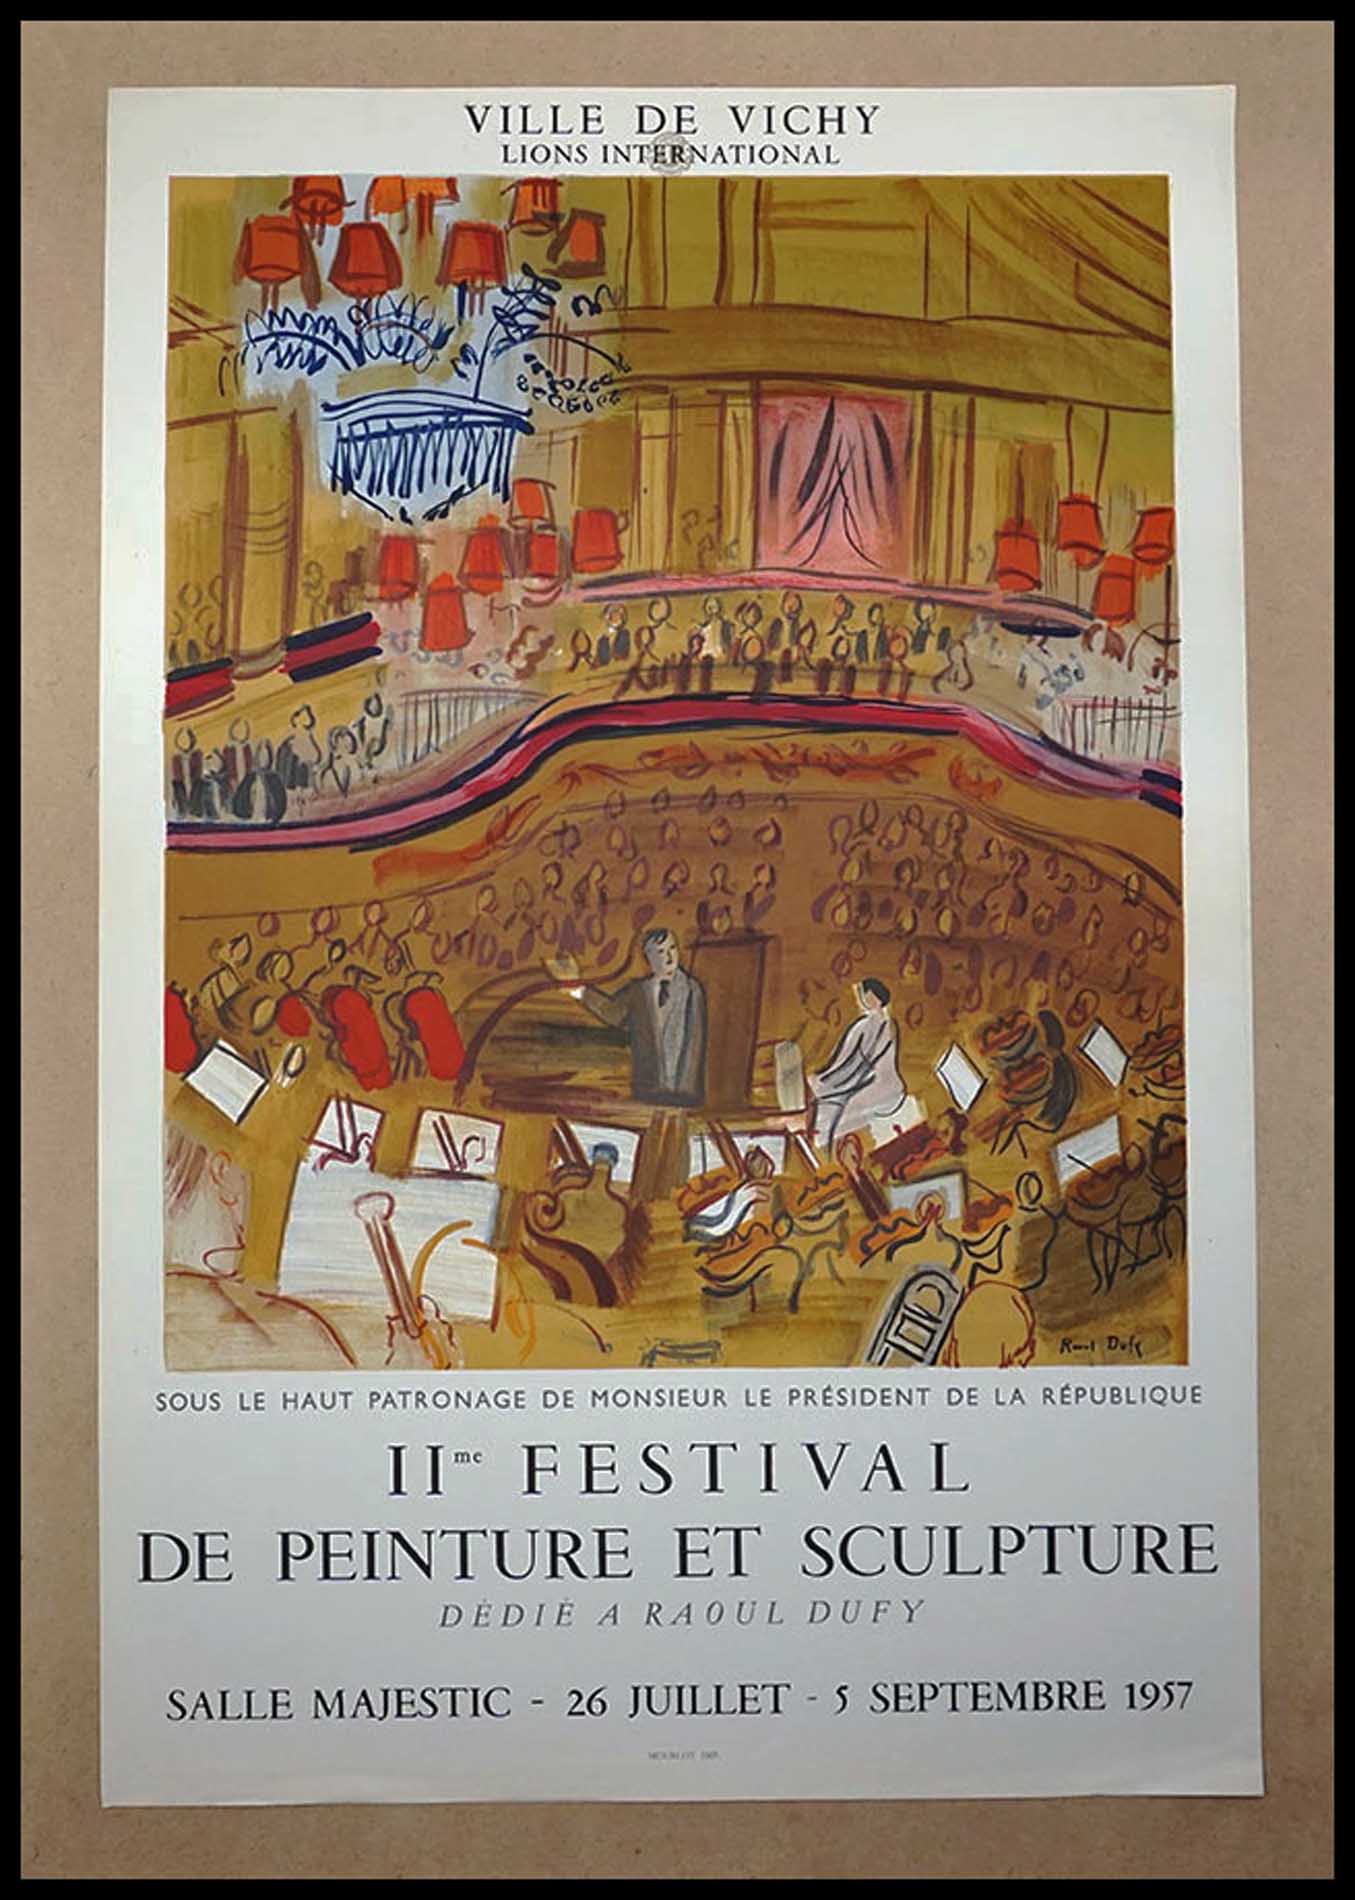 Raoul Dufy, Deuxieme Festival de peinture et sculptures, Vichy